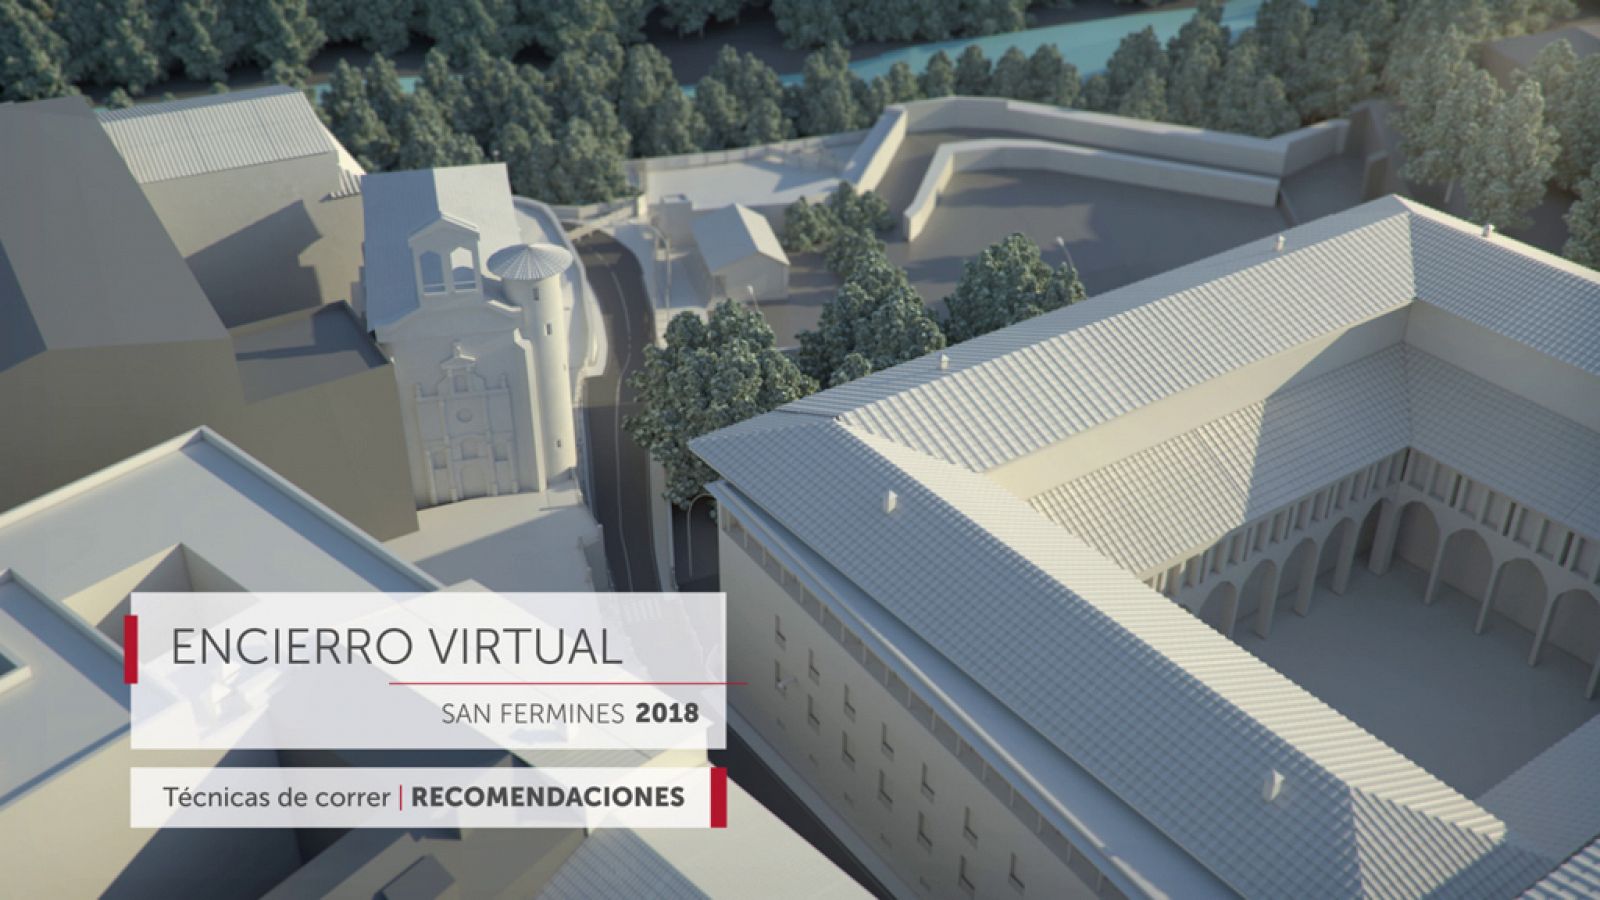 Encierro virtual de San Fermín - Recomendaciones y técnicas para correr los encierros - RTVE.es